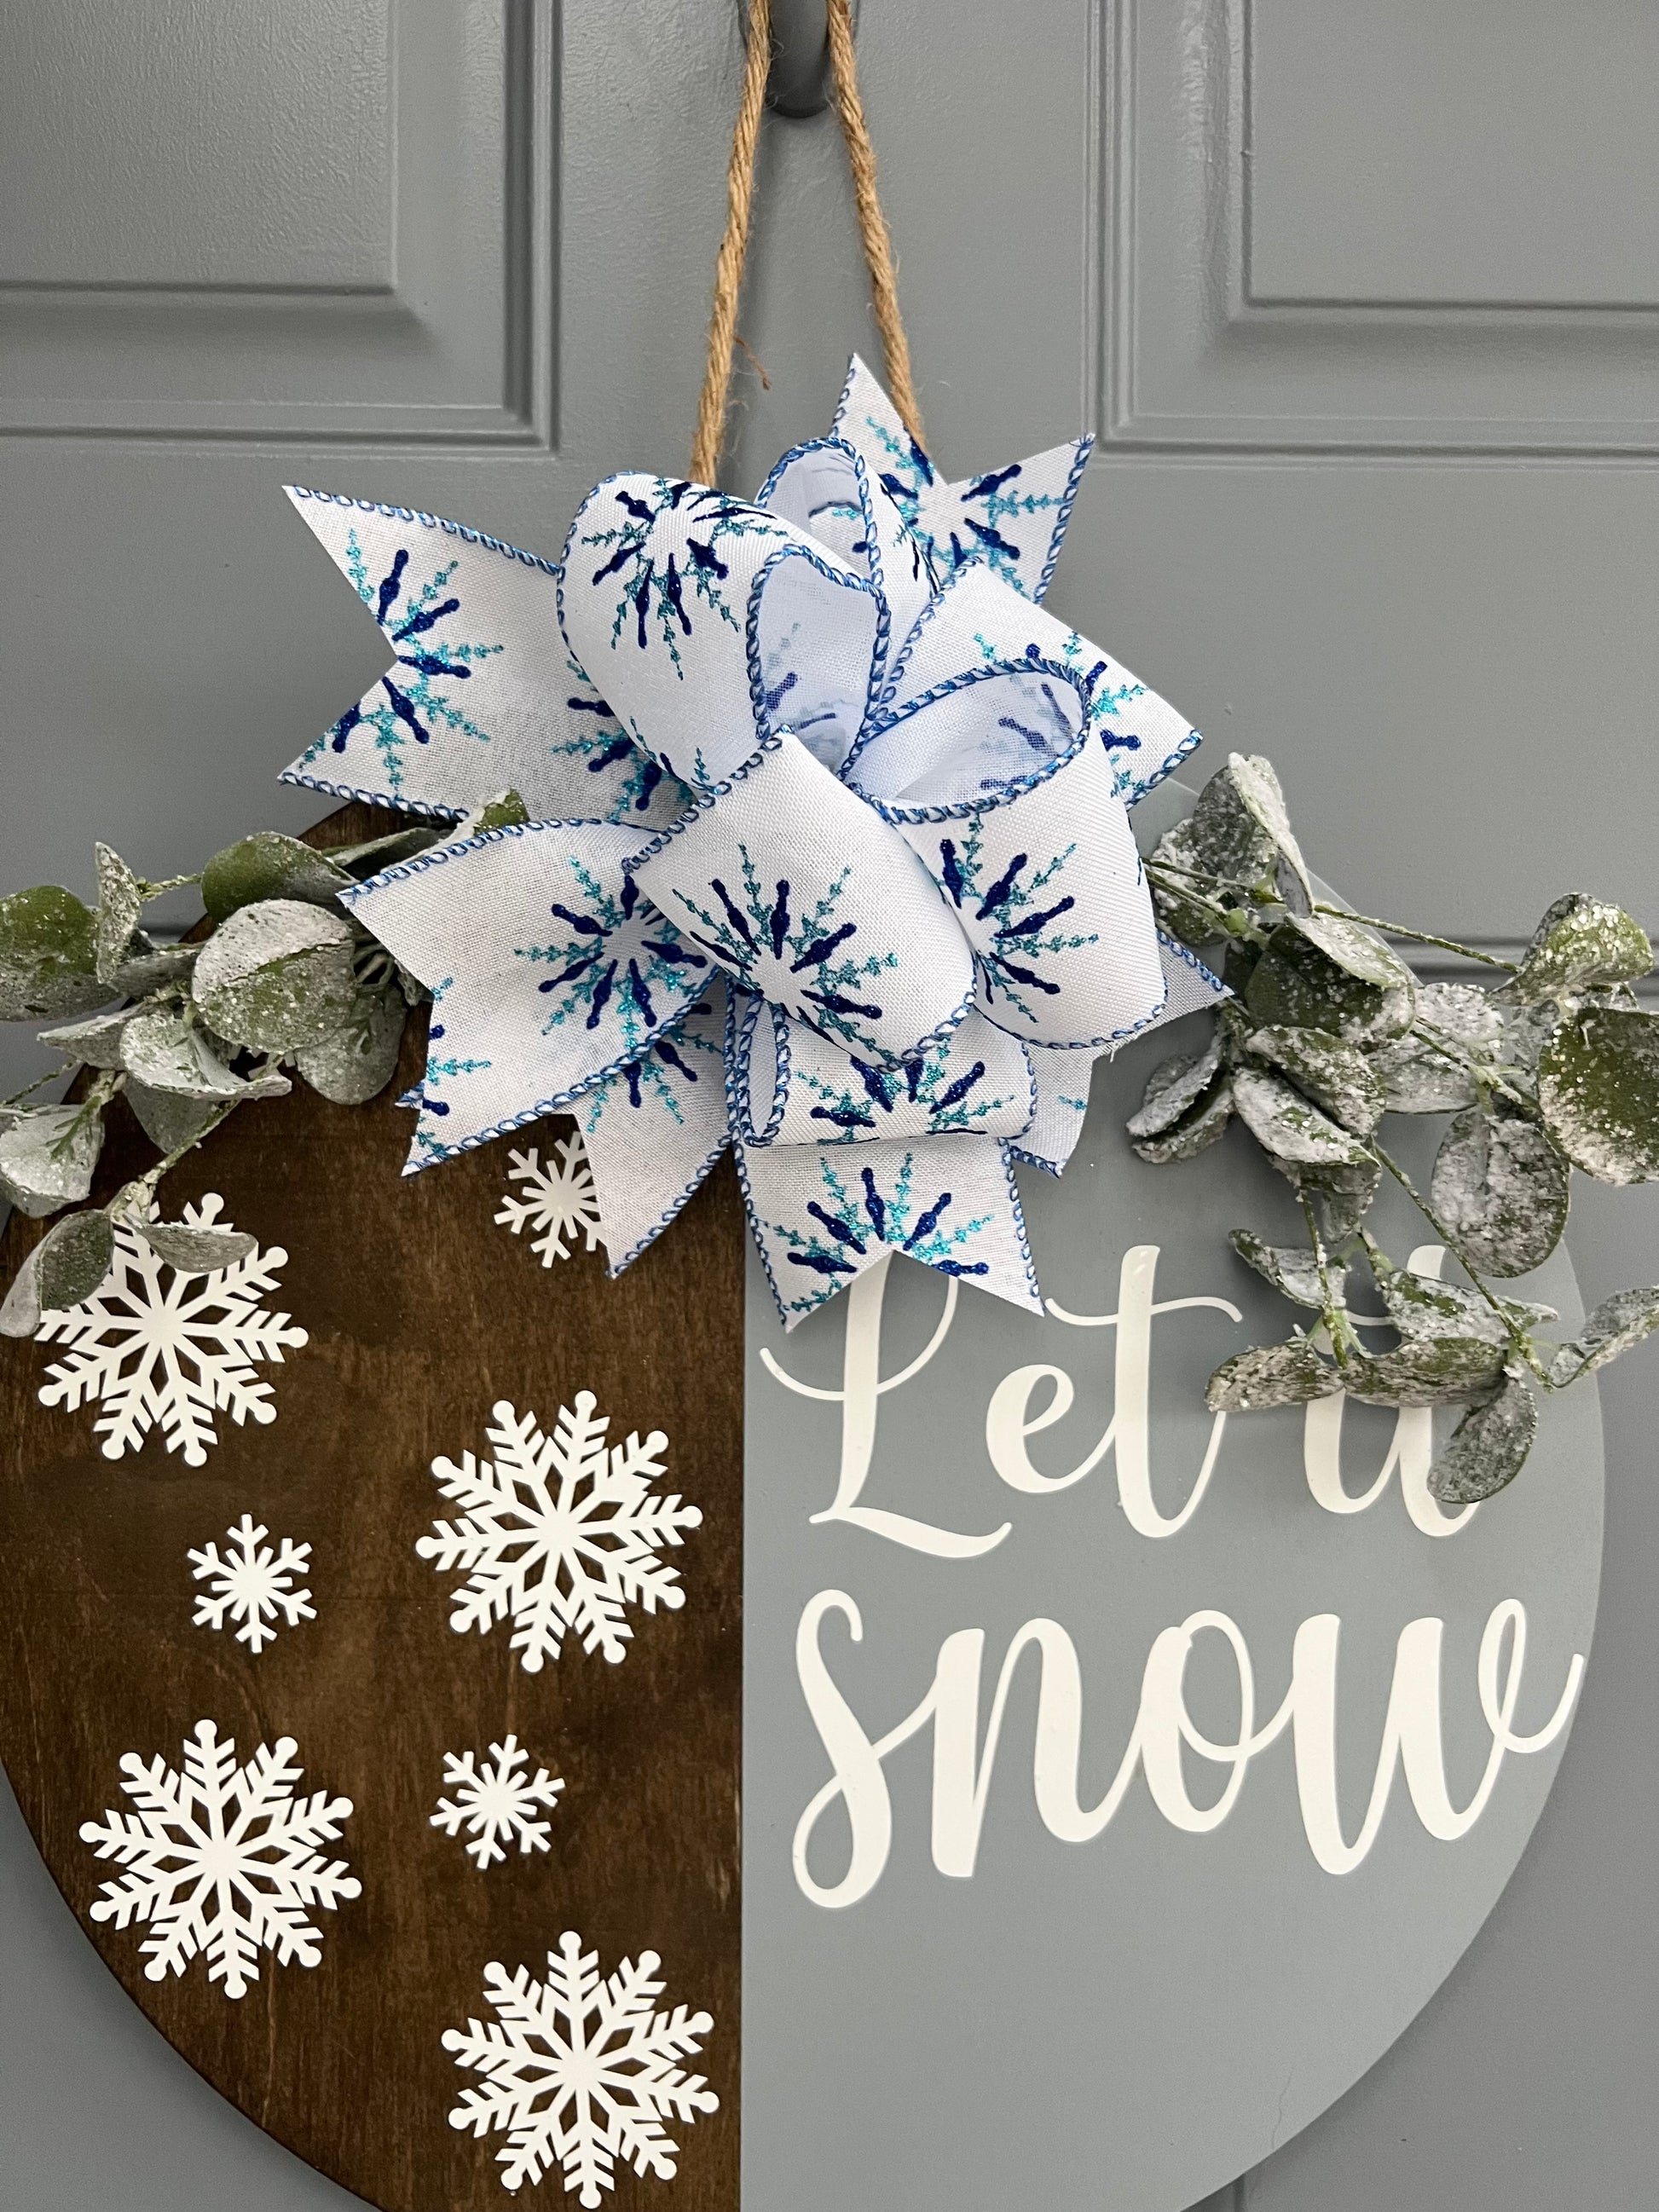 Let It Snow Door Hanger - Willow Love Bug Designs 